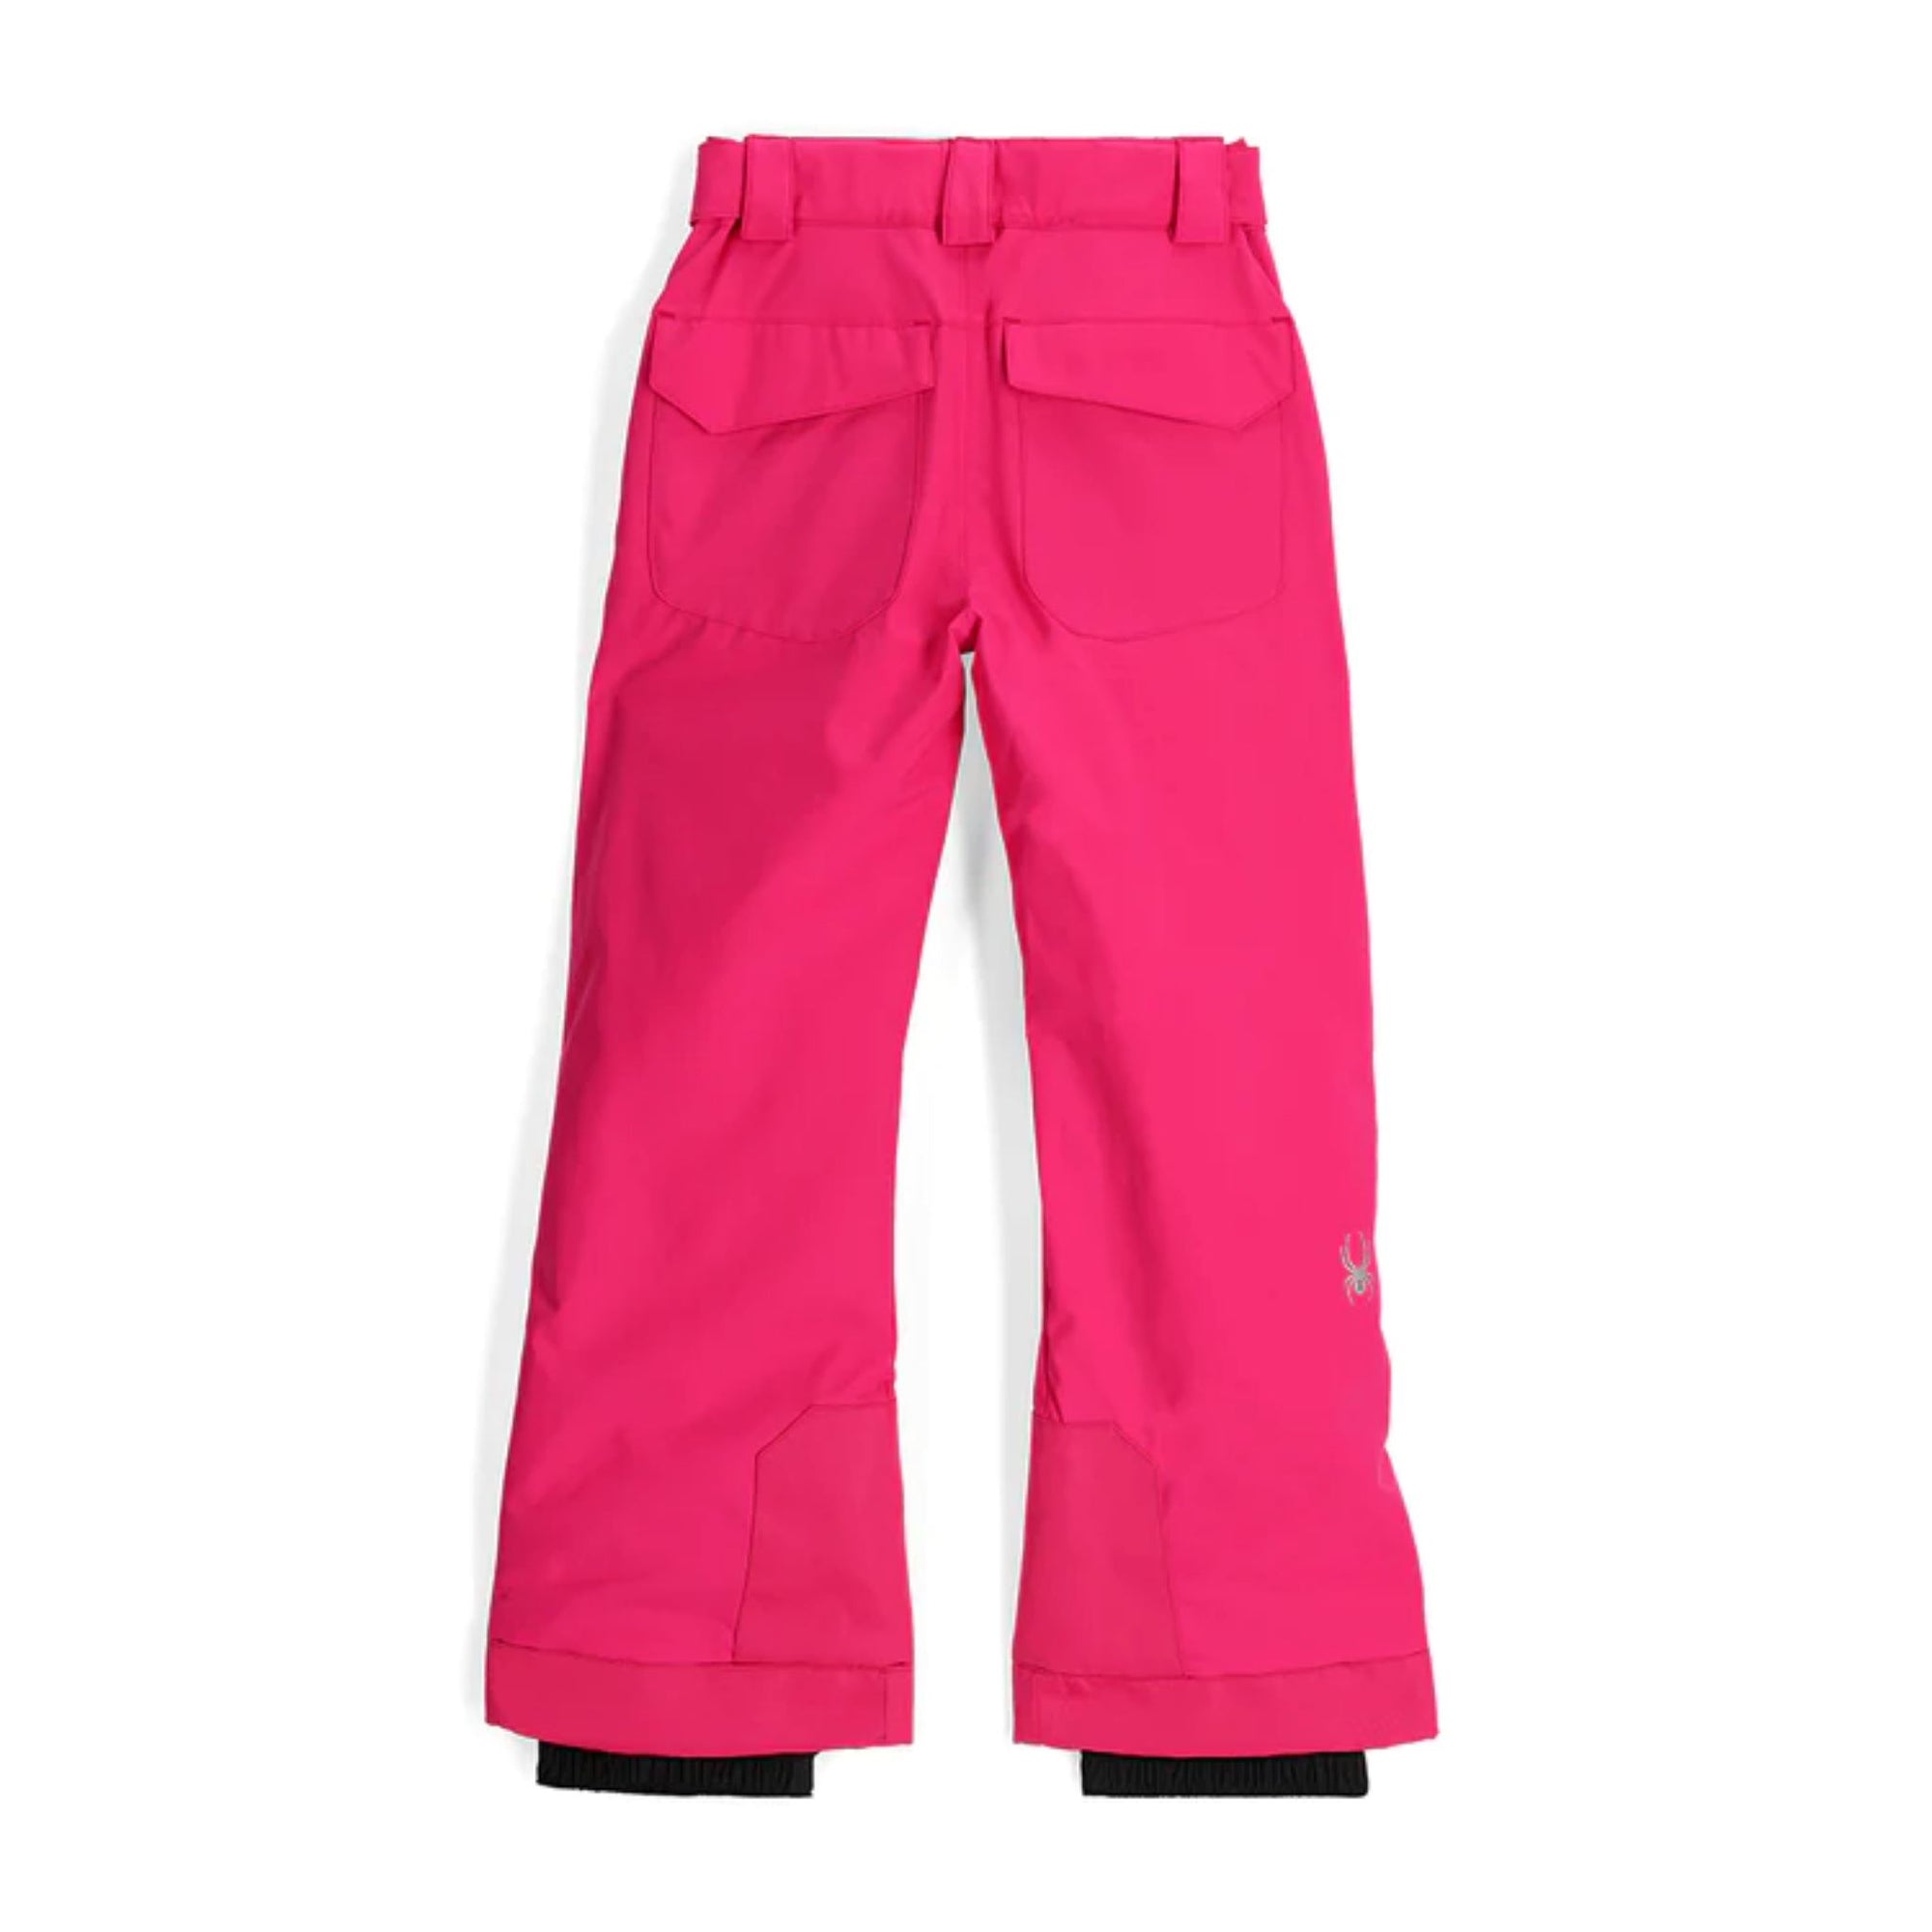 Girls Spyder Olympia Pants - Pink Pants Spyder 